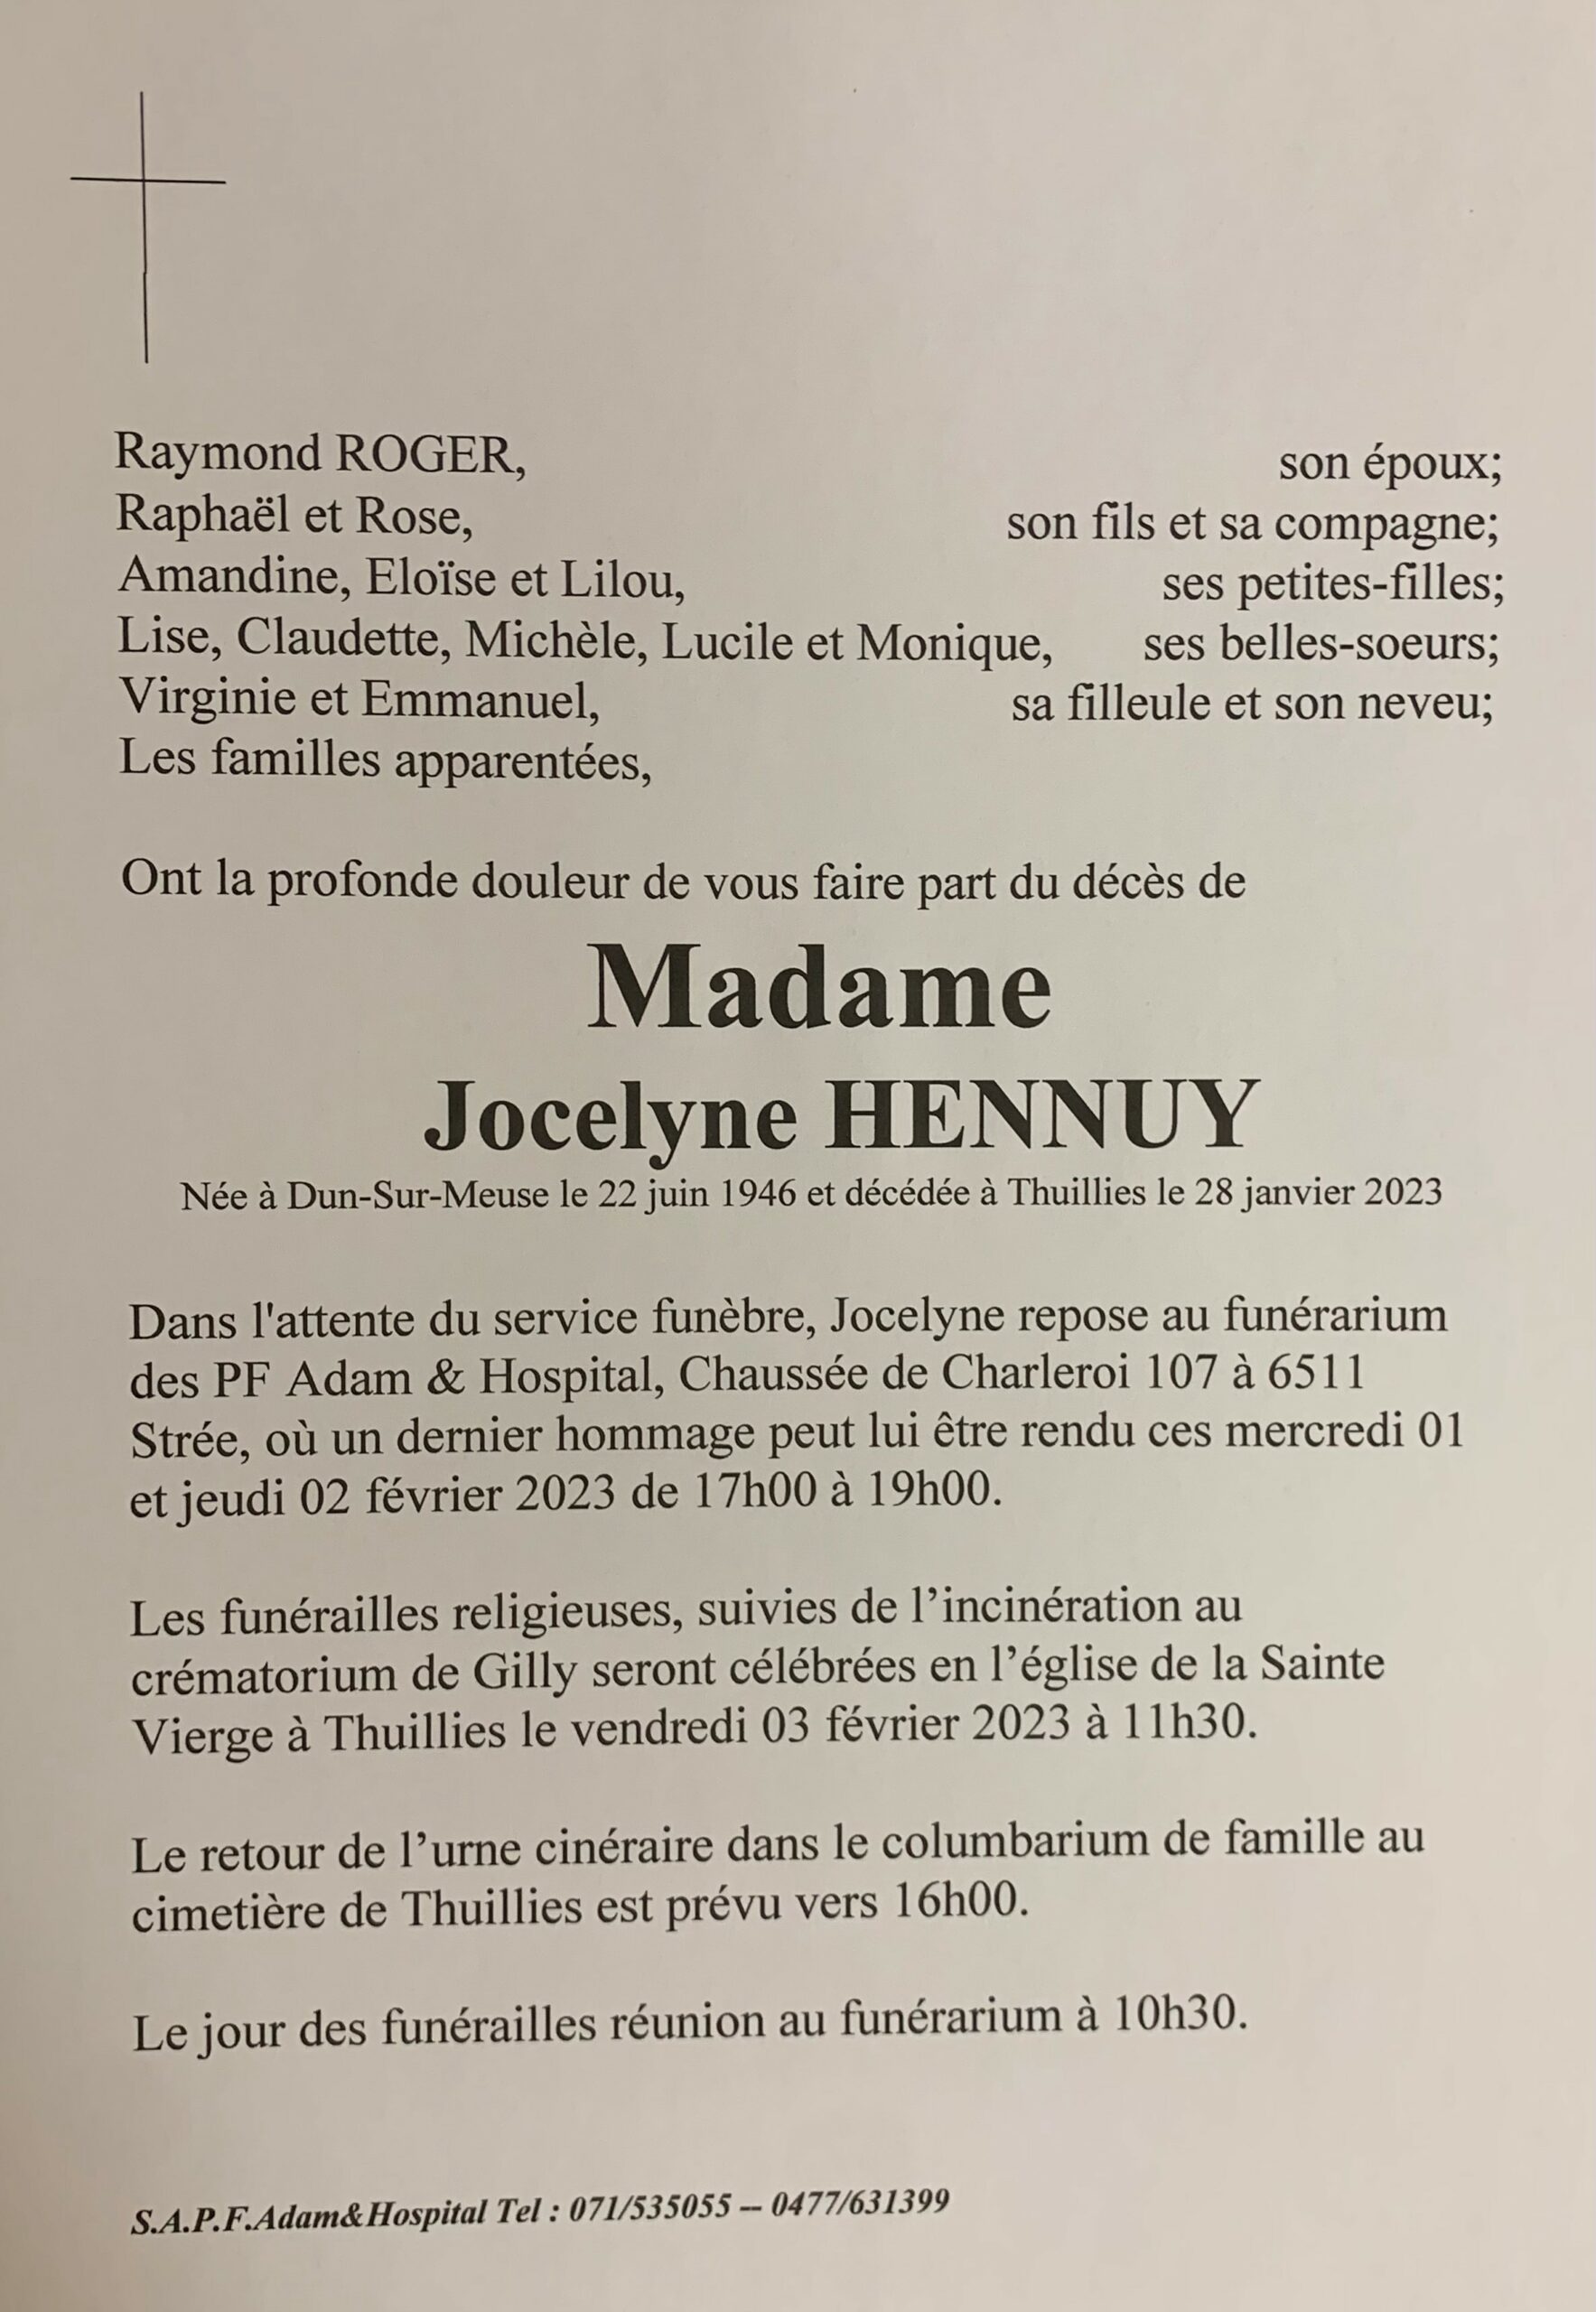 Madame Jocelyne HENNUY scaled | Funérailles Adam Hospital